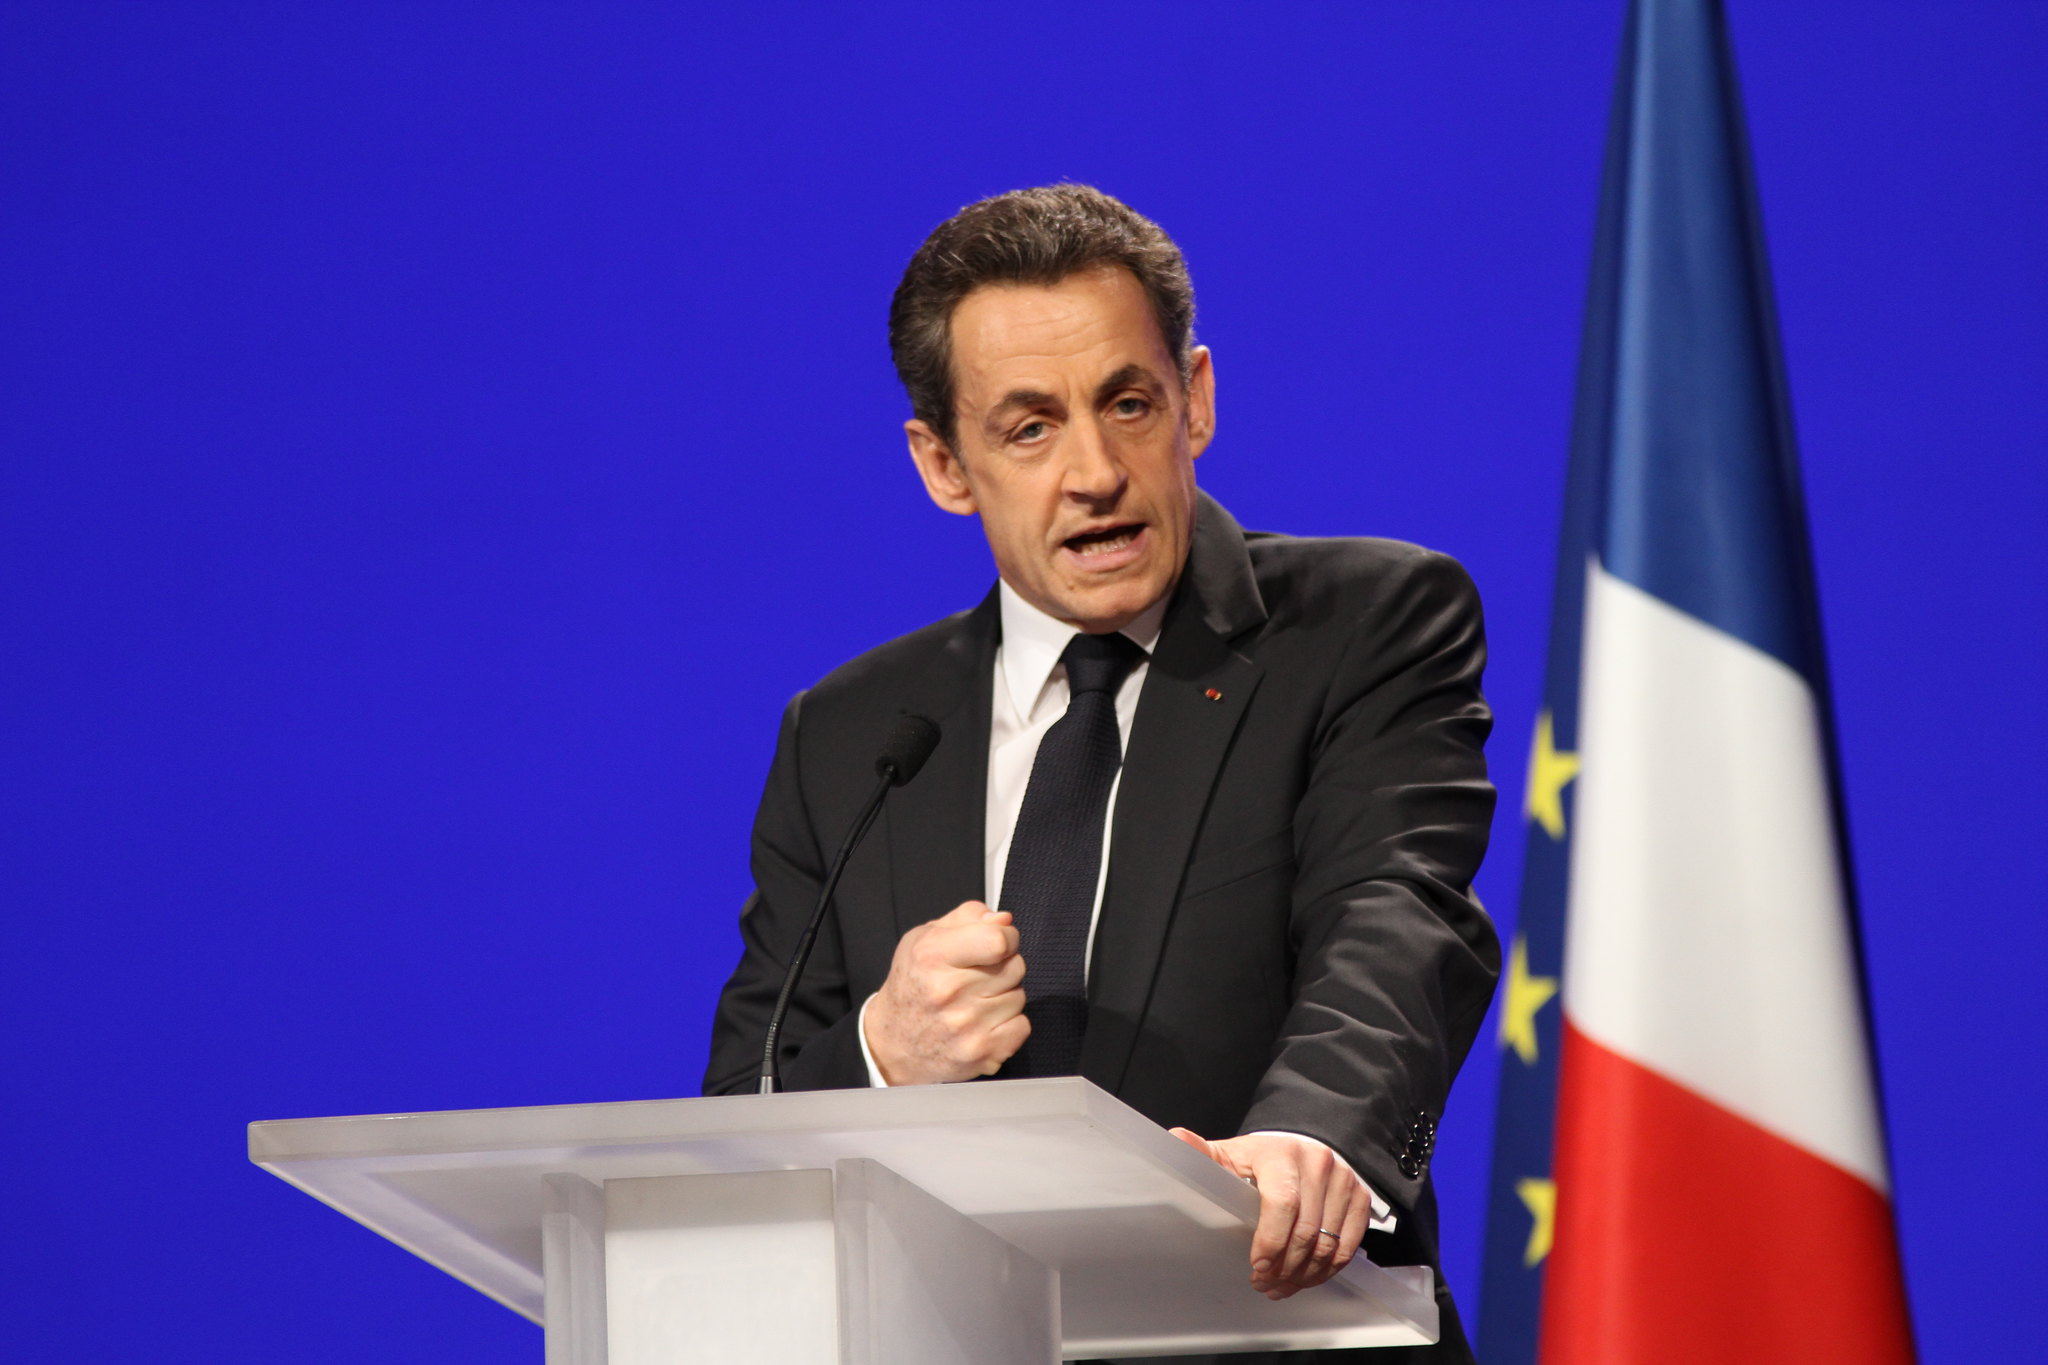 “Il y a trop de livres” : Sarkozy joue l'expert de l'édition